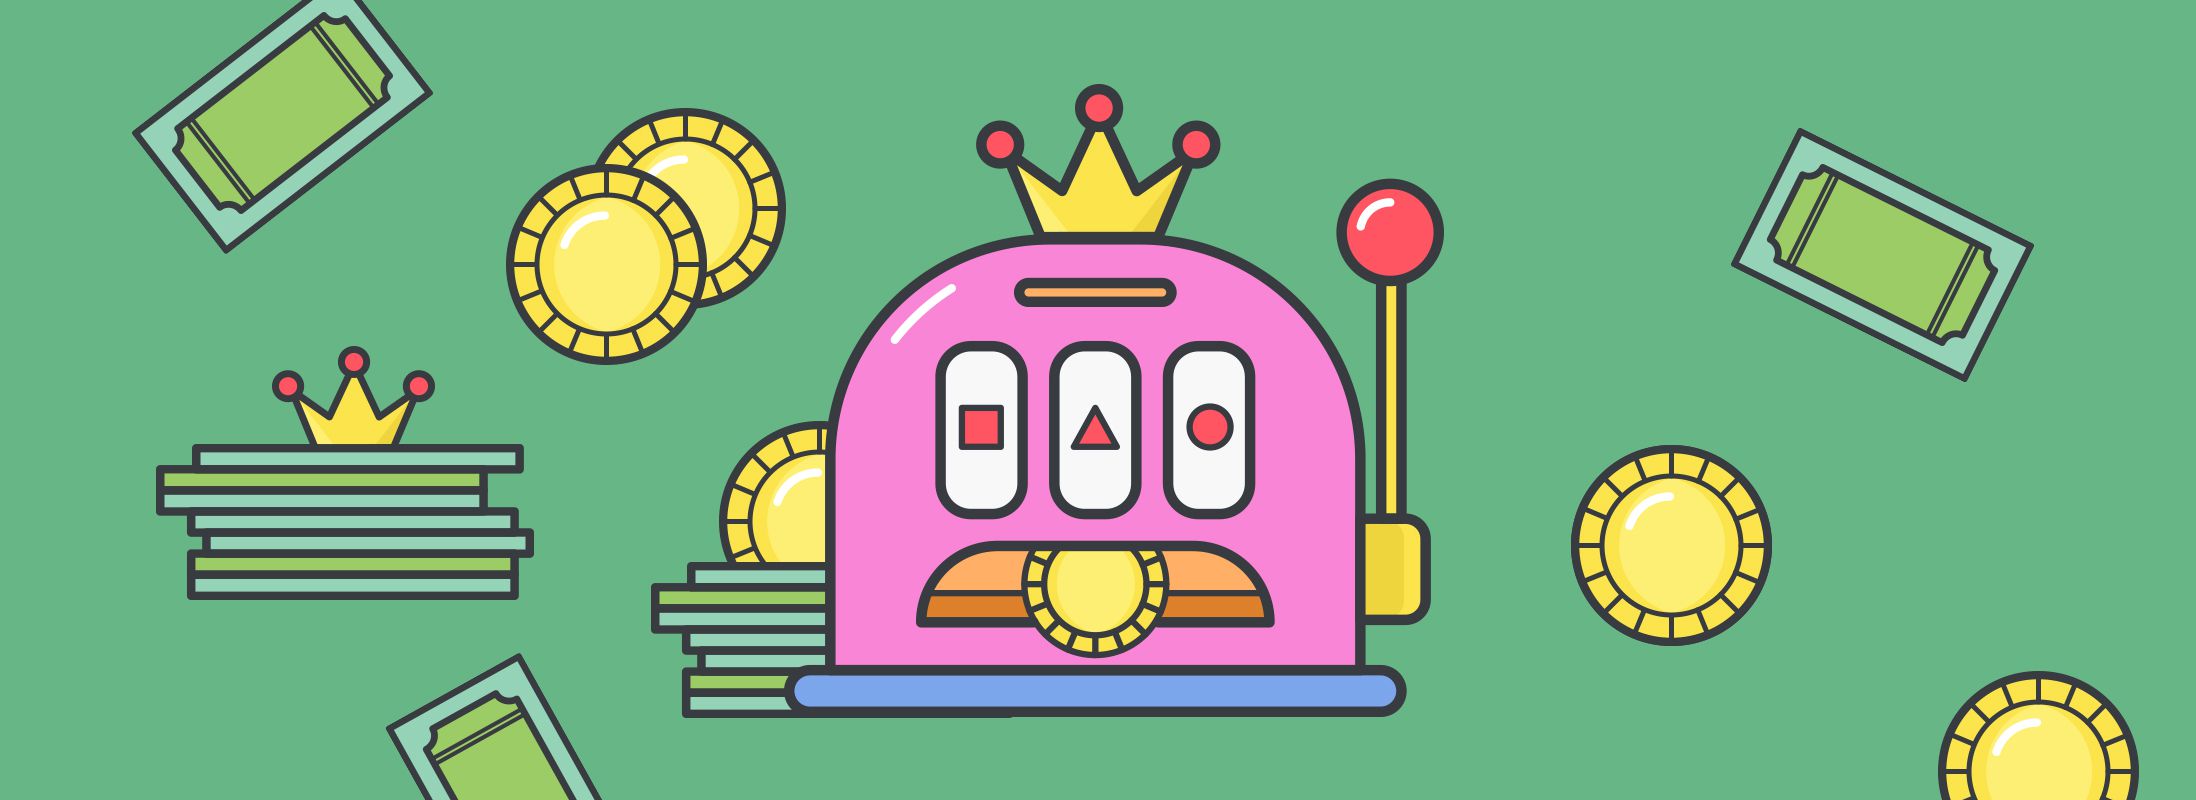 animerad rosa spelautomat med en krona på toppen